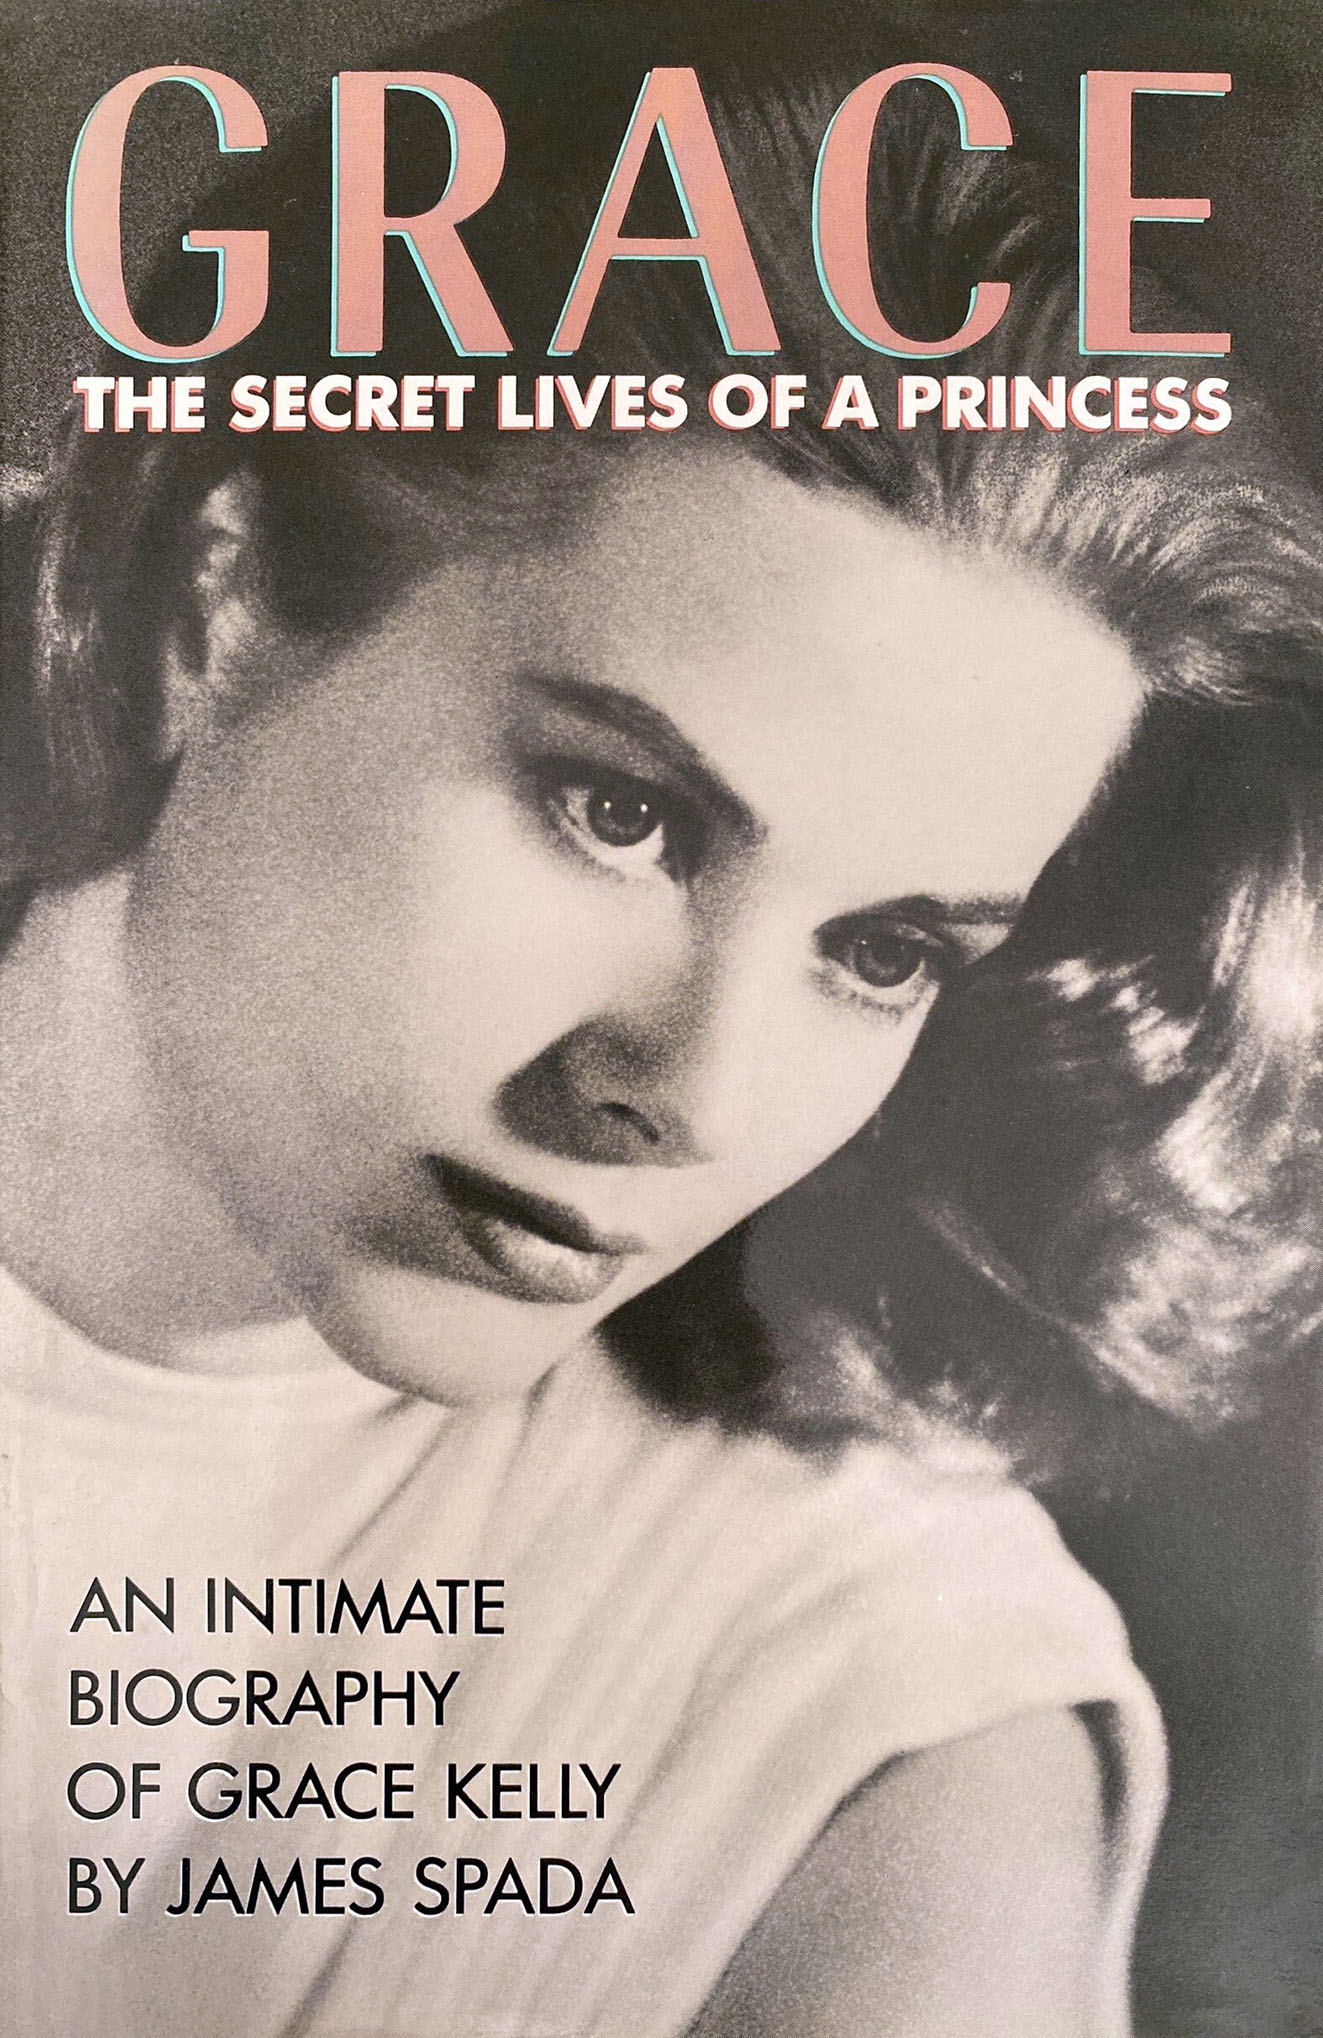 Grace: The Secret Lives of a Princess